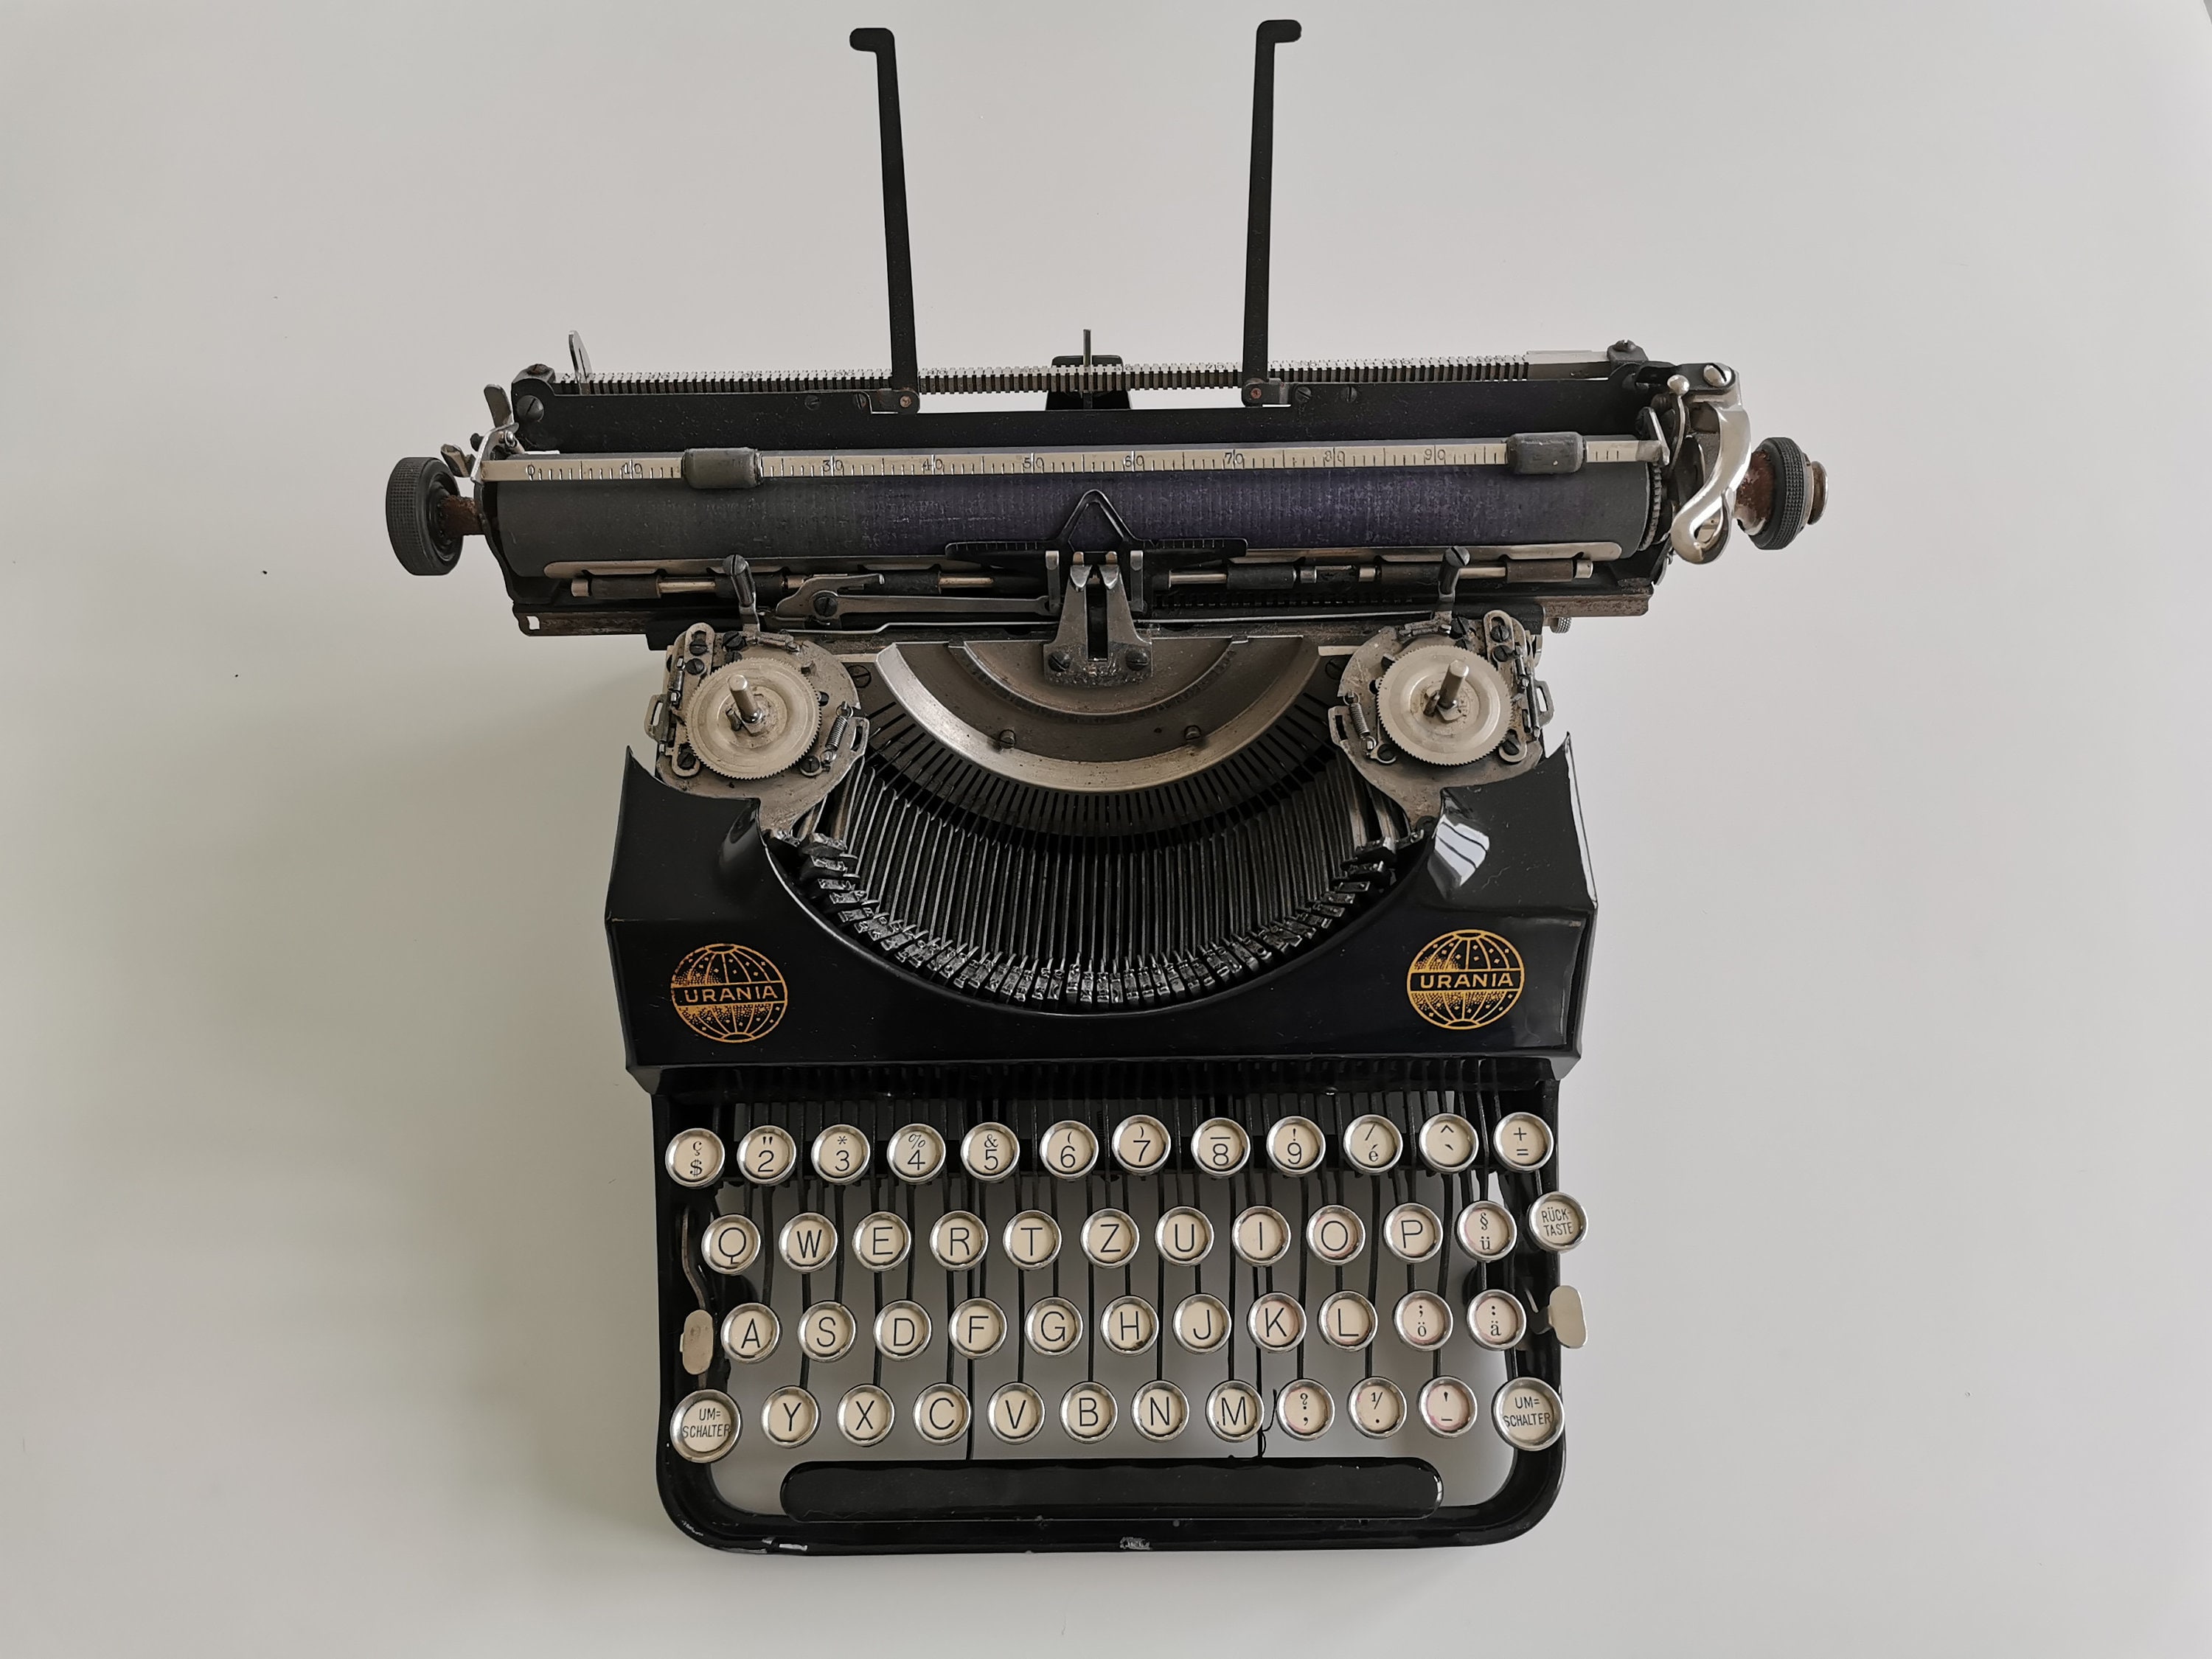 Sehr seltene besondere Vintage Schreibmaschine Urania Piccola - Etsy.de